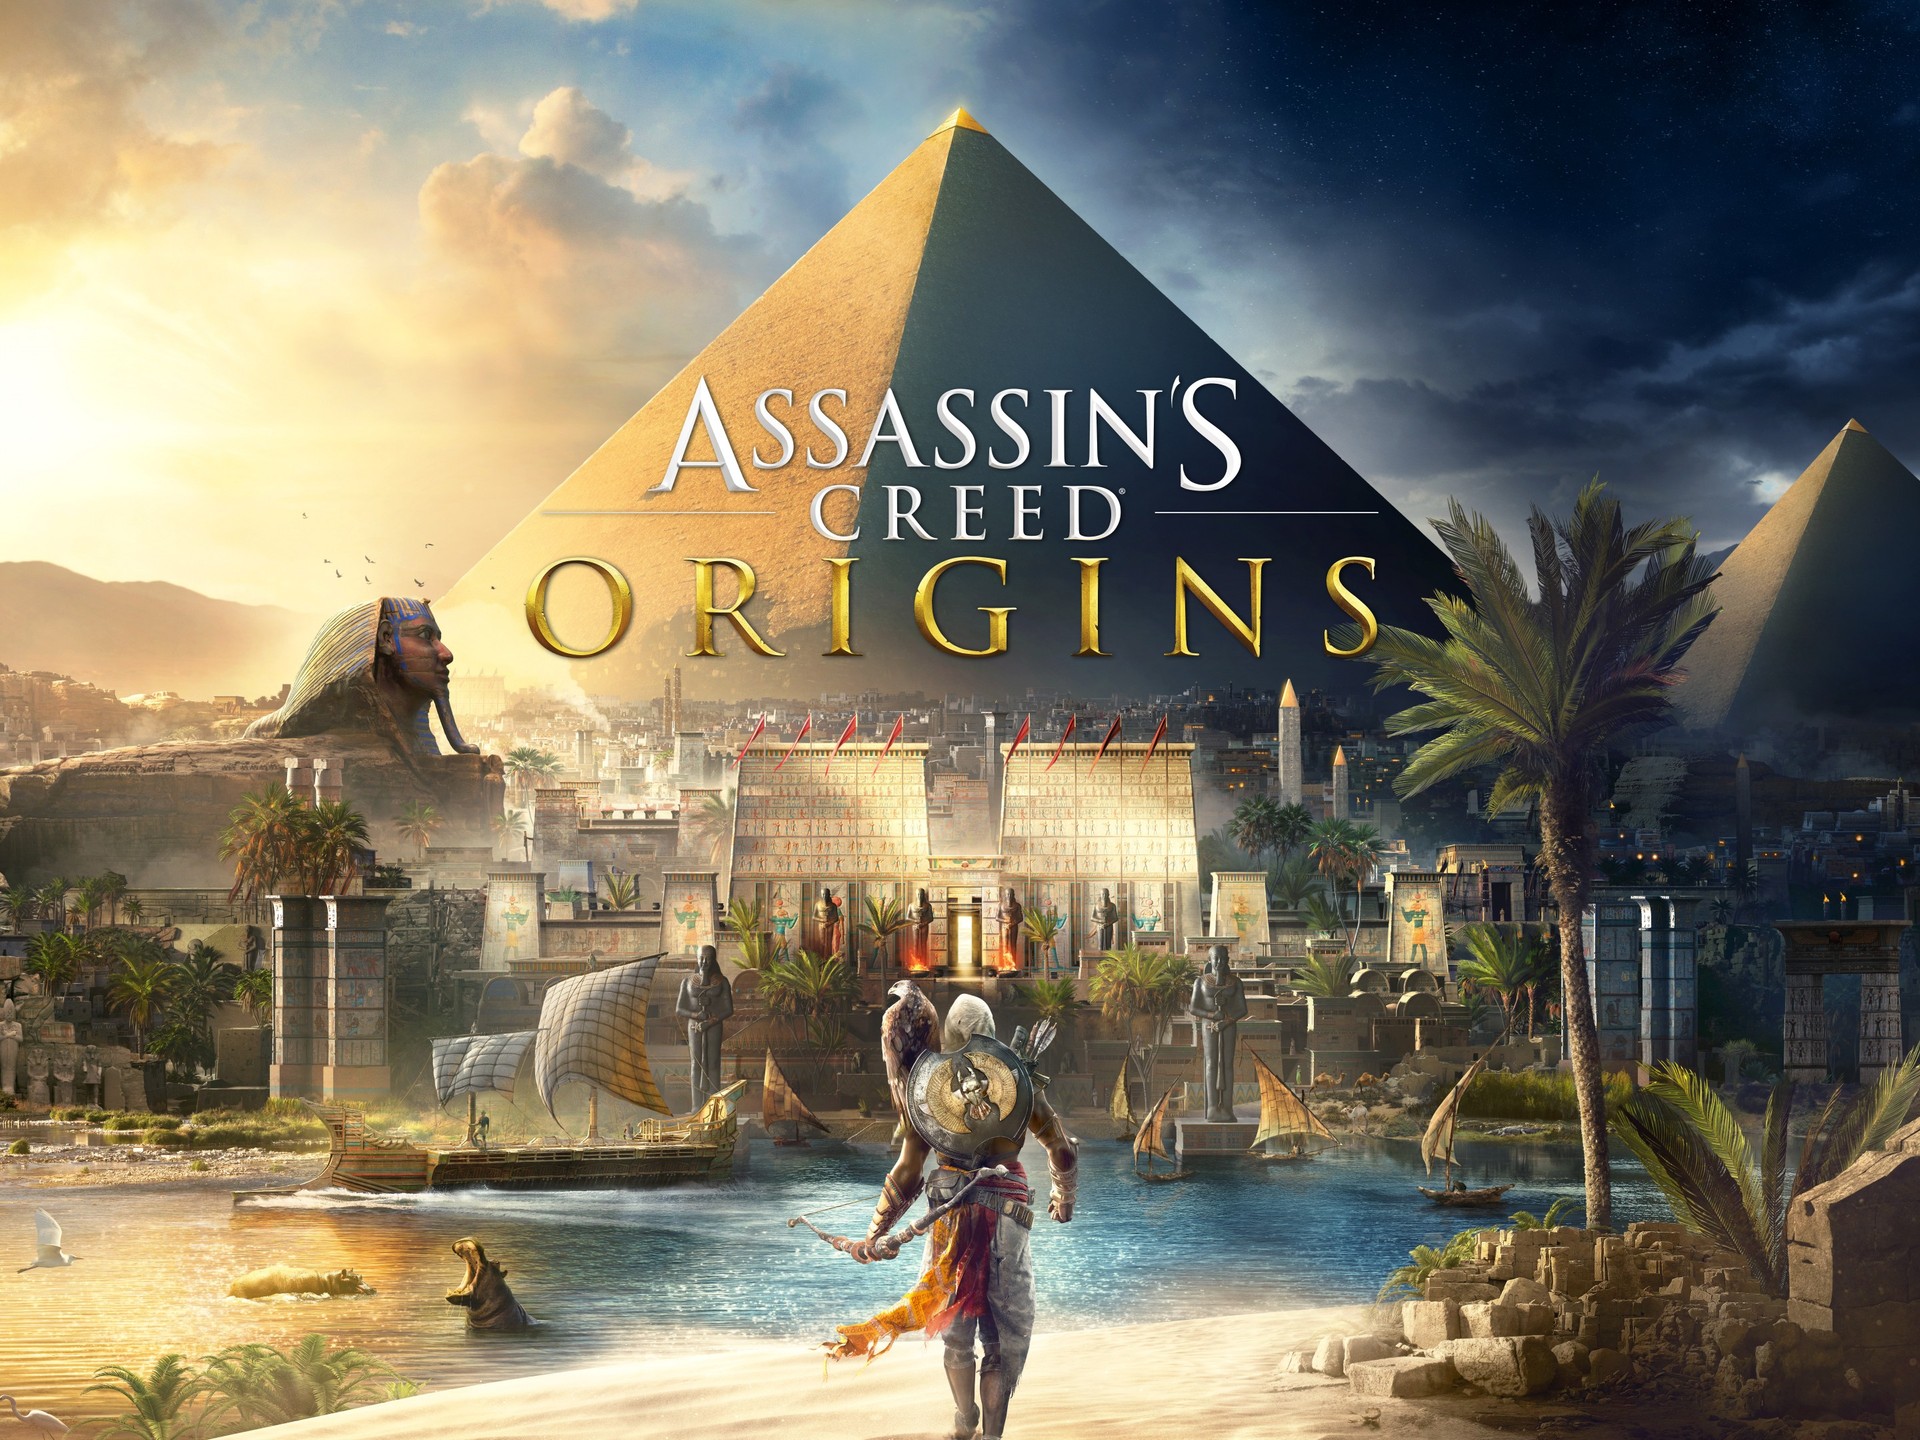 Ubisoft revela configurações necessárias para rodar Assassin's Creed Origins  no PC 